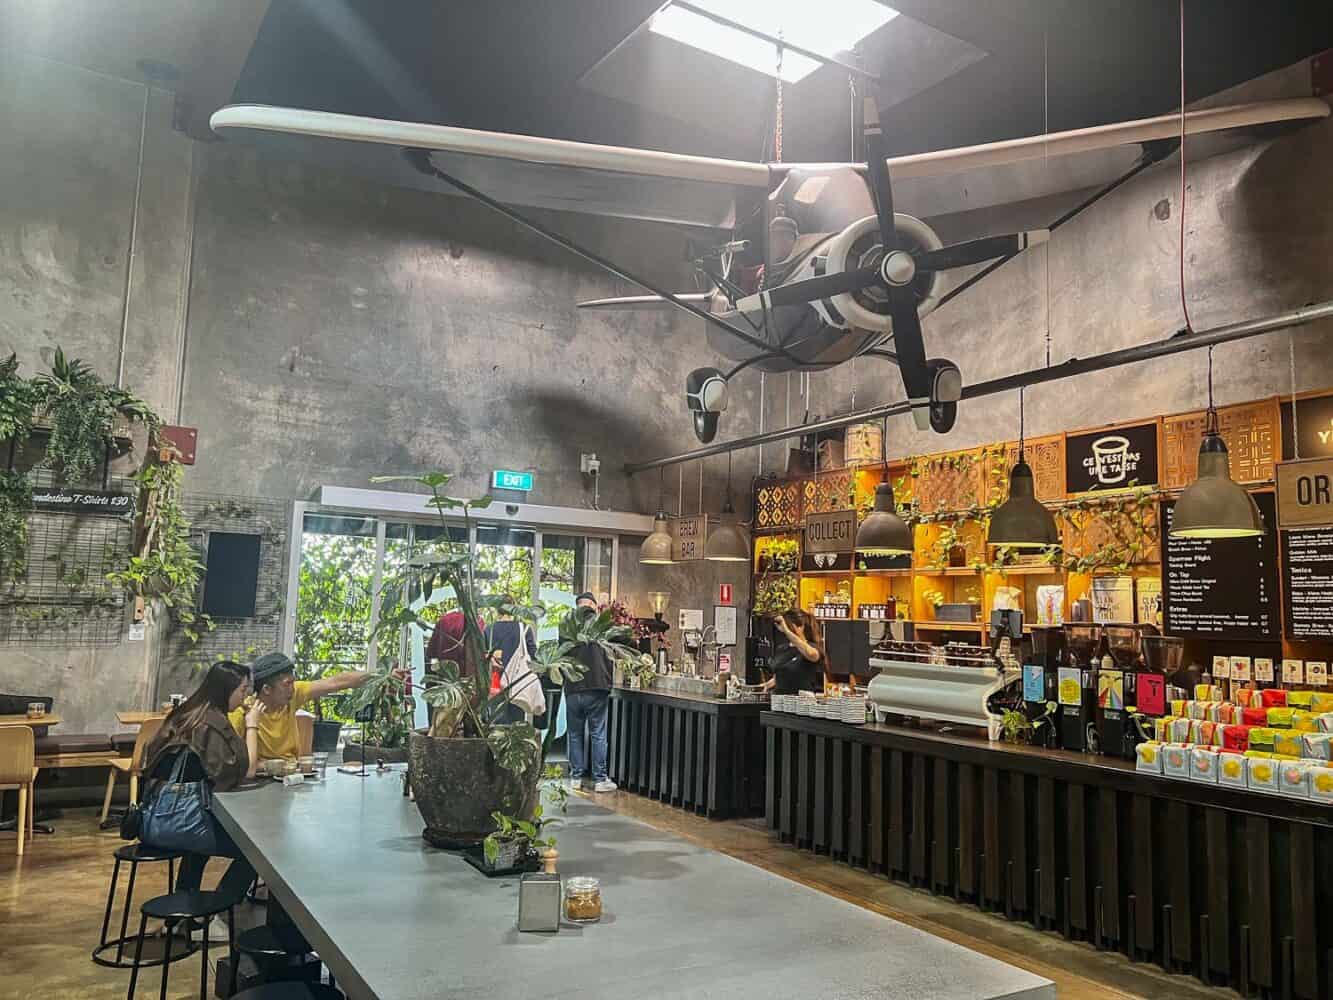 Industrial interior at Clandestino Coffee cafe, Noosa, Queensland, Australia